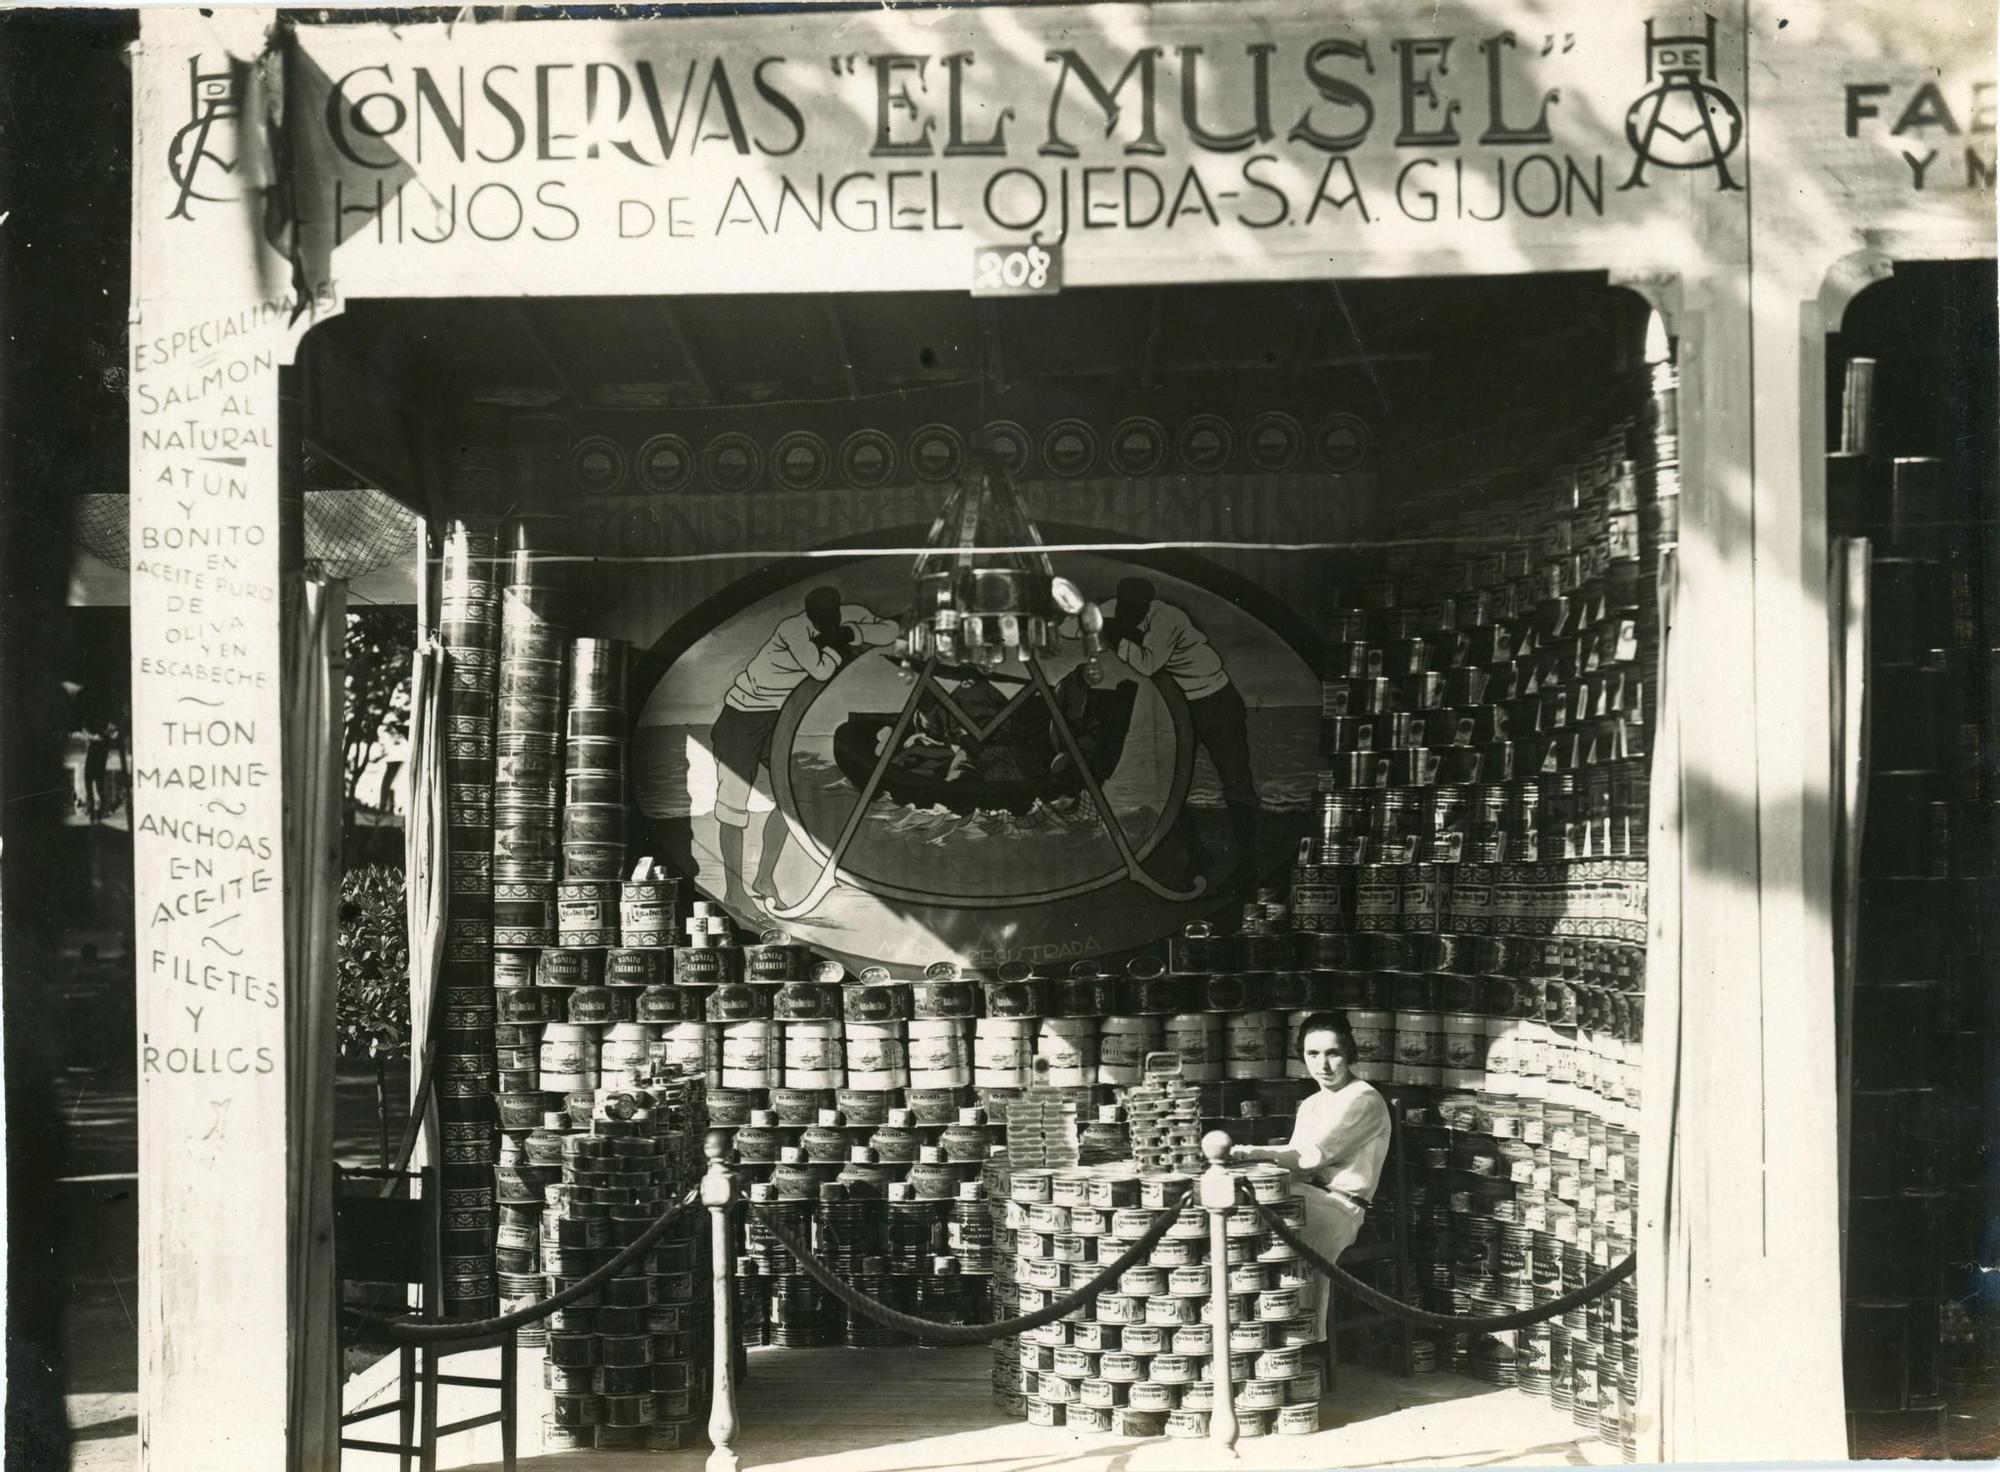 JUNIO. Puesto de Conserves El Musel en la Feria de Muestres de 1929.